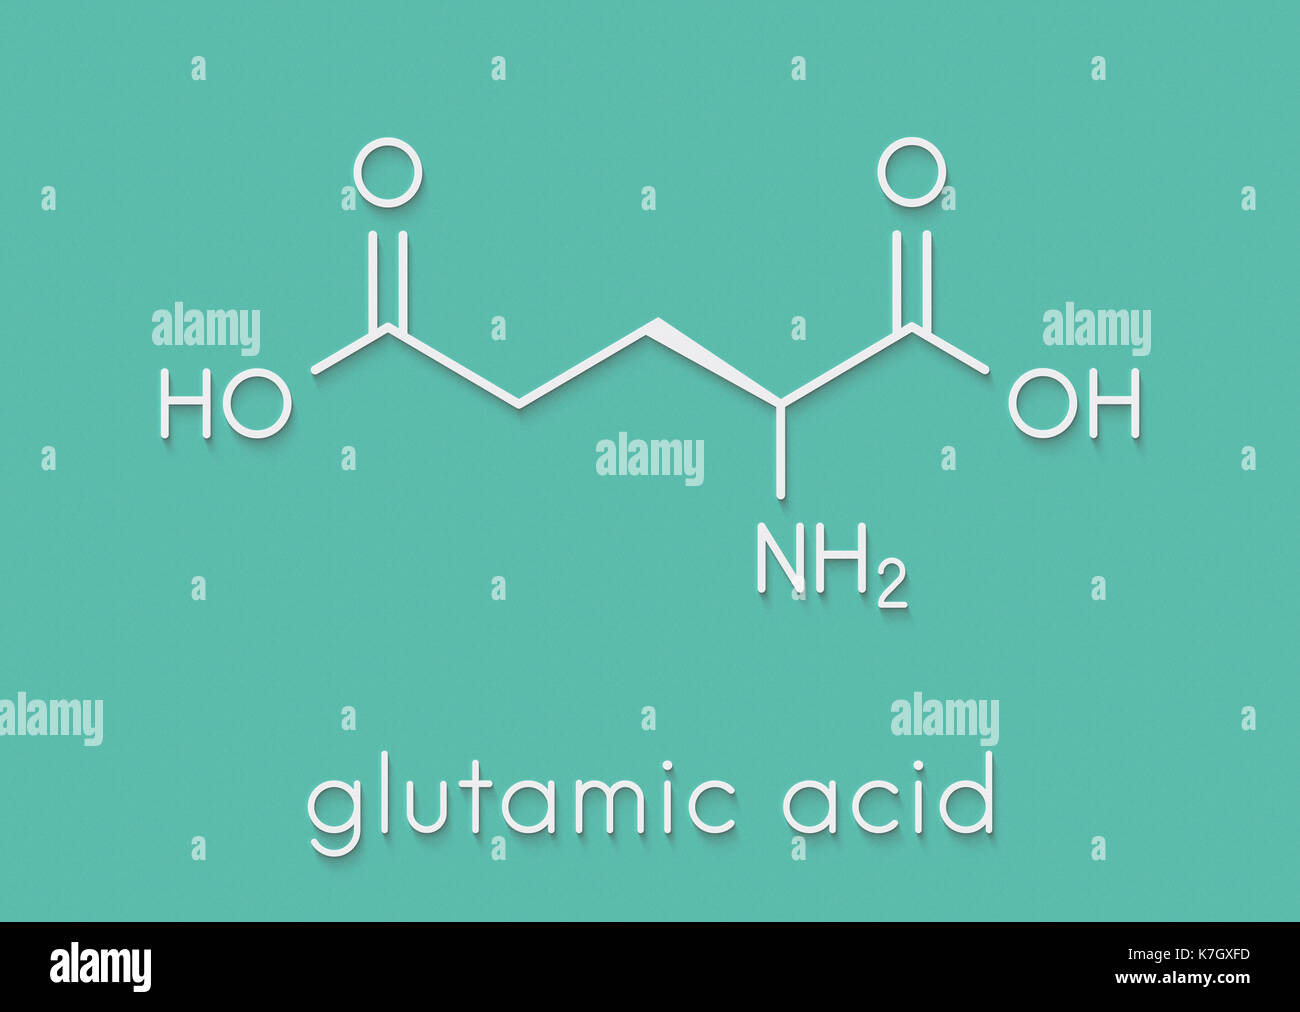 Chemistry chemical formula glutamate Banque d'images détourées - Alamy